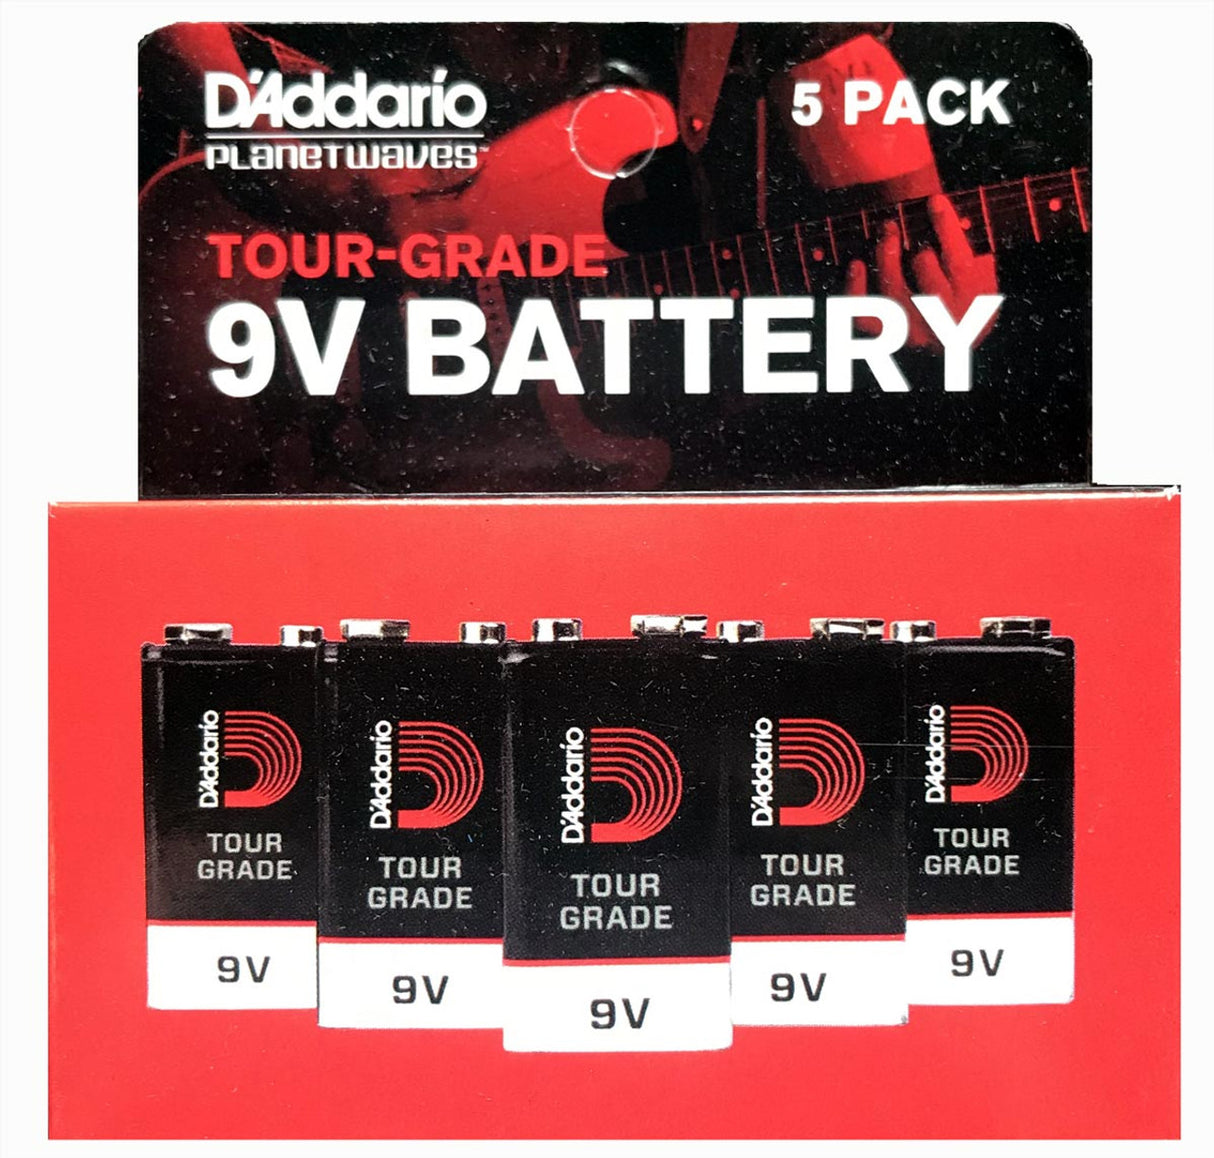 D'Addario Tour-Grade 9V Battery 5-Pack